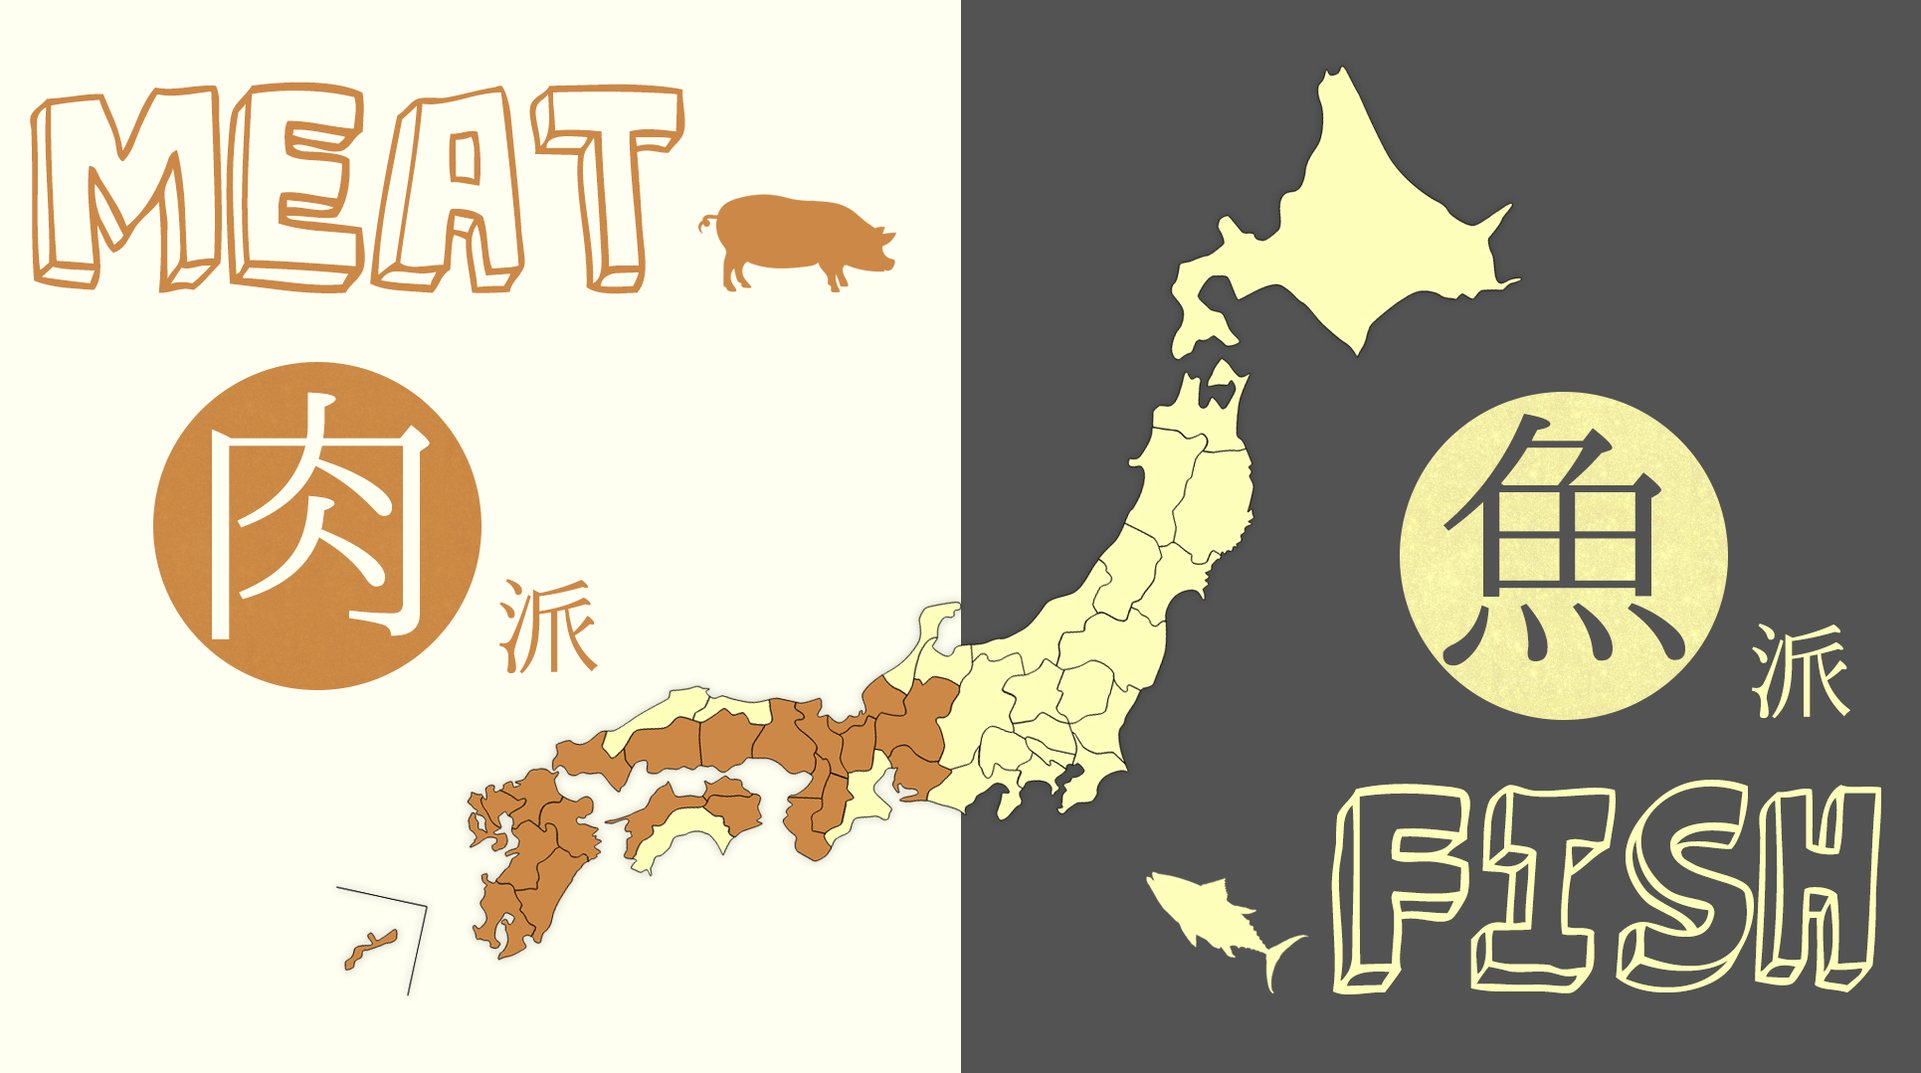 肉vs魚 どっちが好き 都道府県別 消費額 ランキング Trip Editor